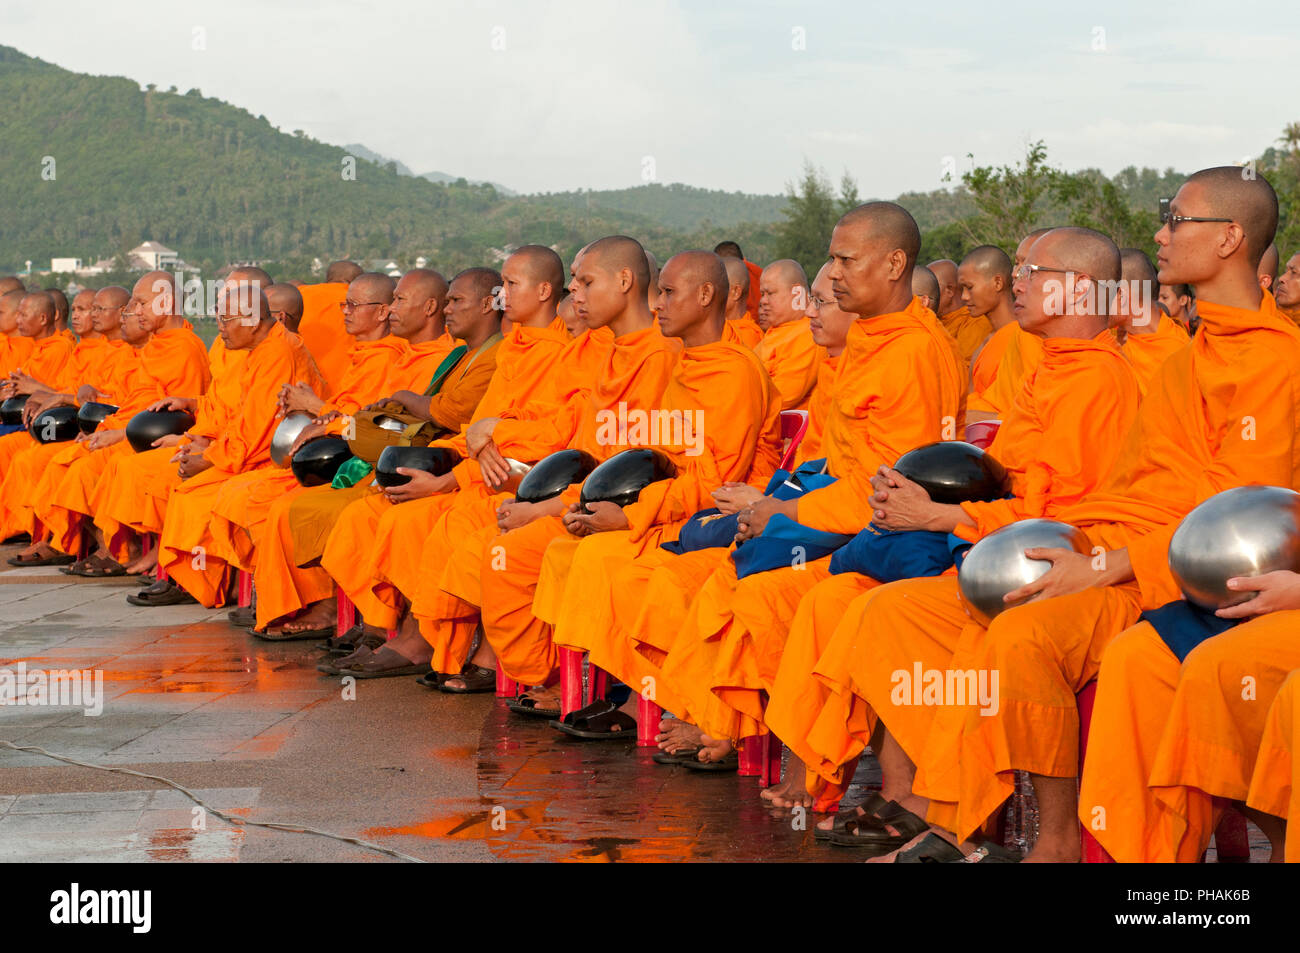 Treffen der Mönche für das neue Jahr in Koh Samui - mit Almosen - Schüssel - Thailand Réunion de moines à Koh Samui - avec Bol à aumône Thaïlande Stockfoto